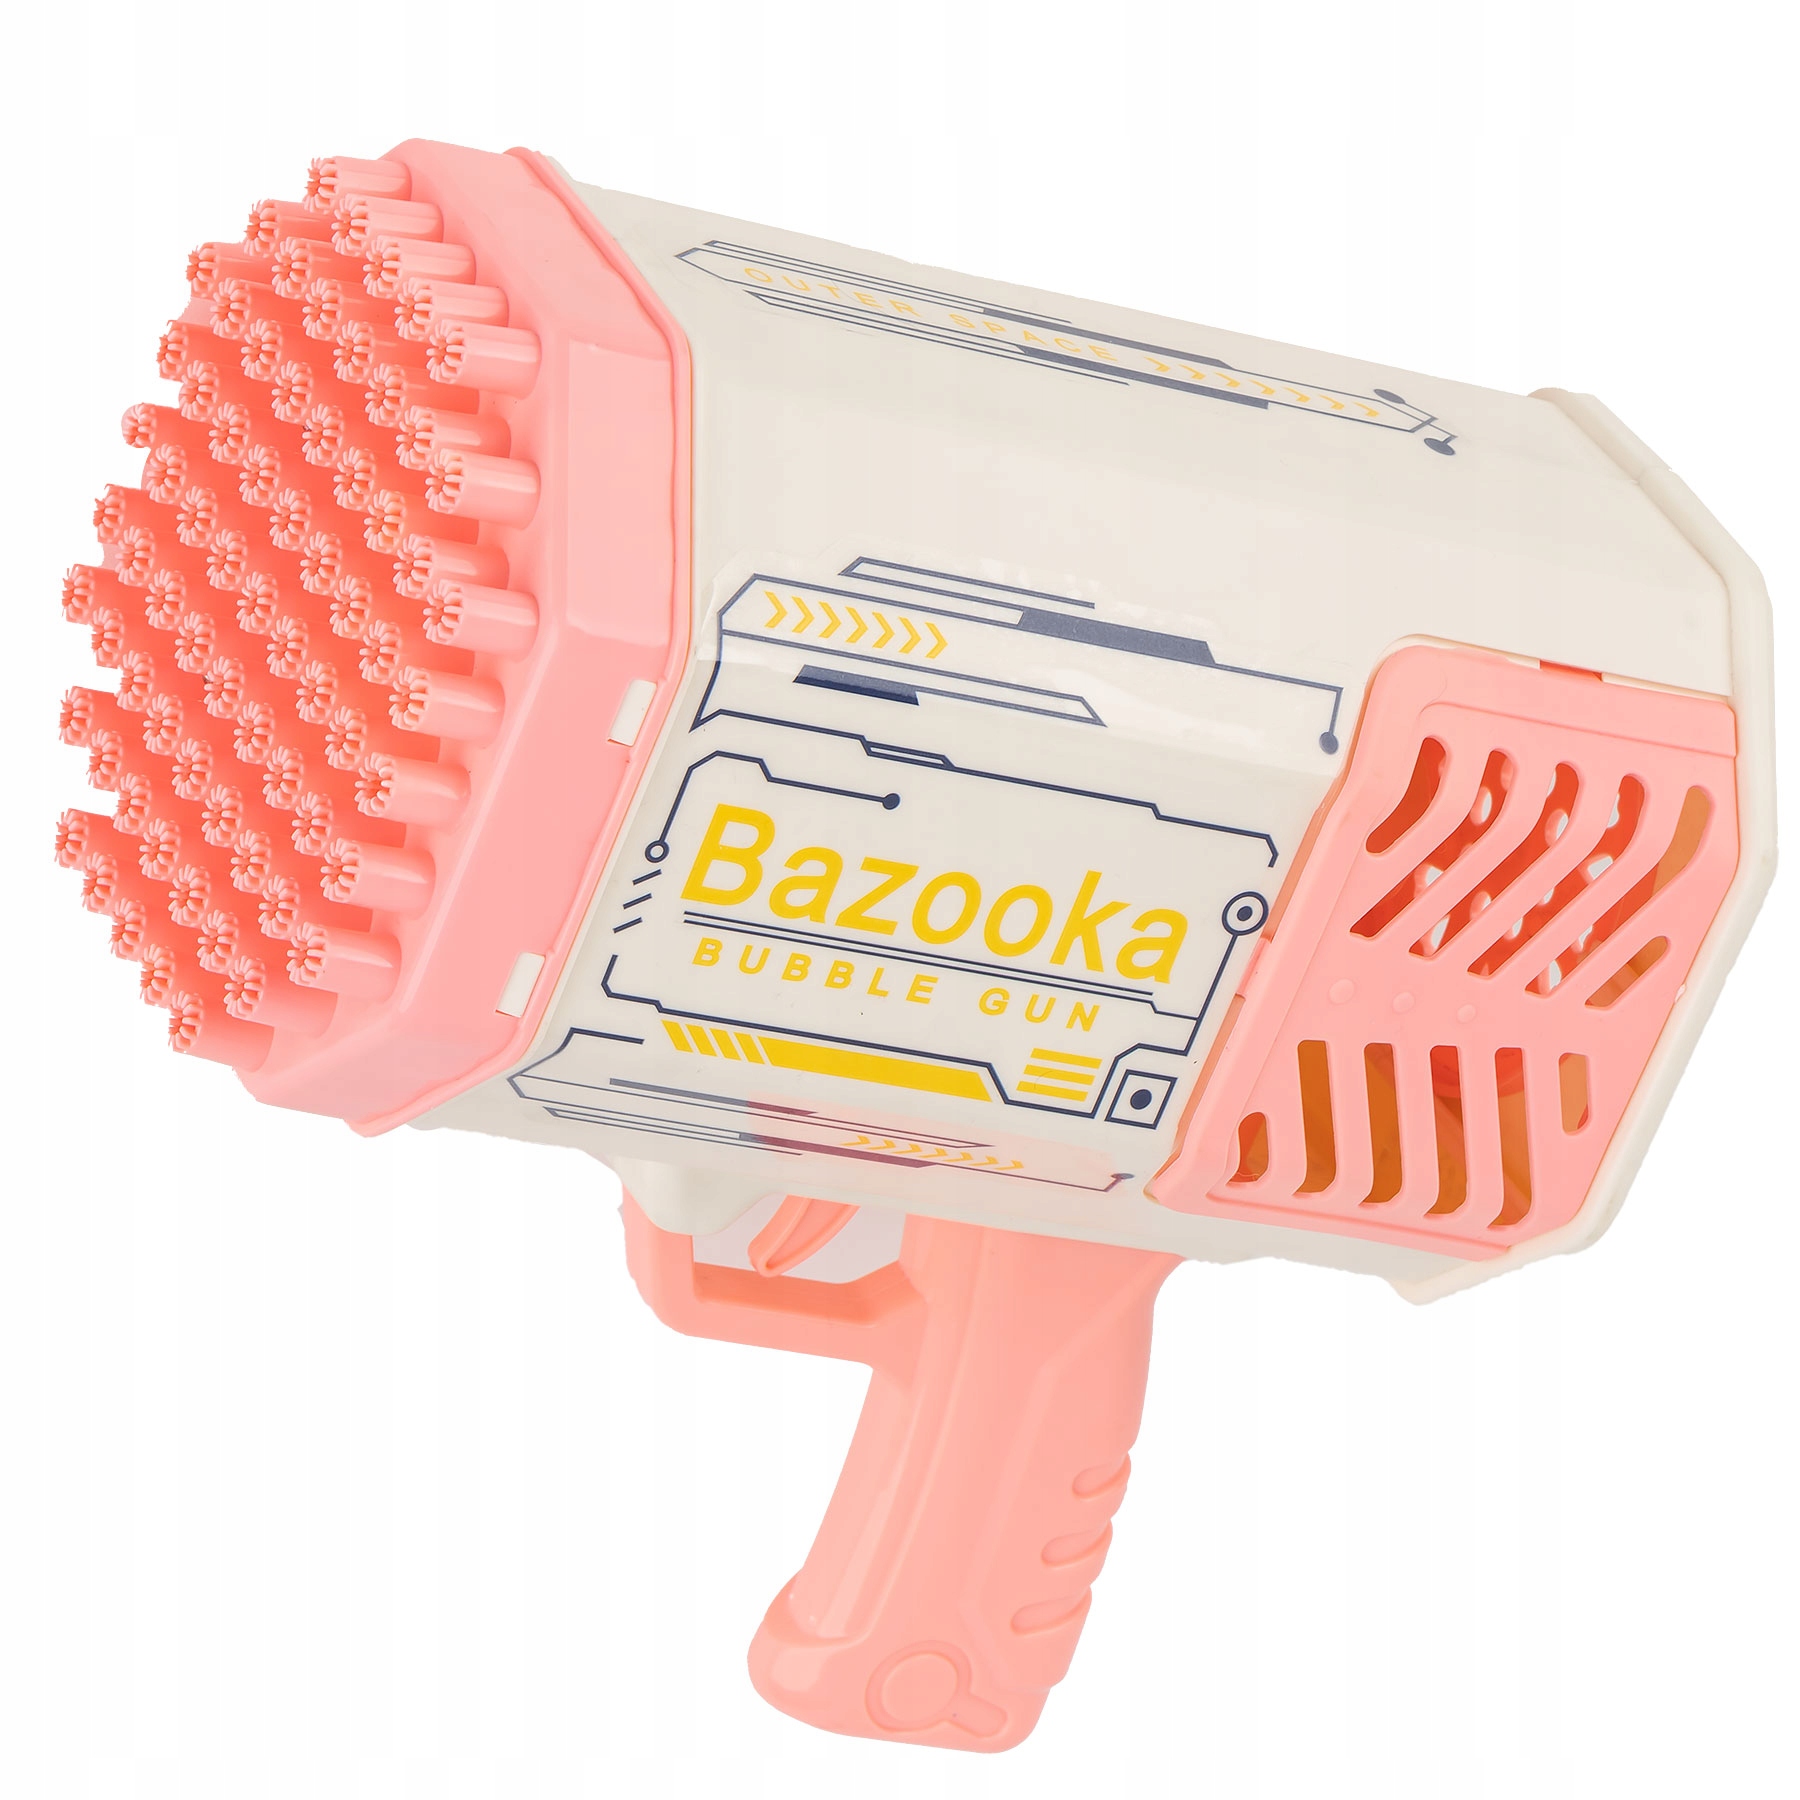 Bubble gun Bazooka Bubble Machine 69 reikää 2 x neste Valmistaja MAT Group